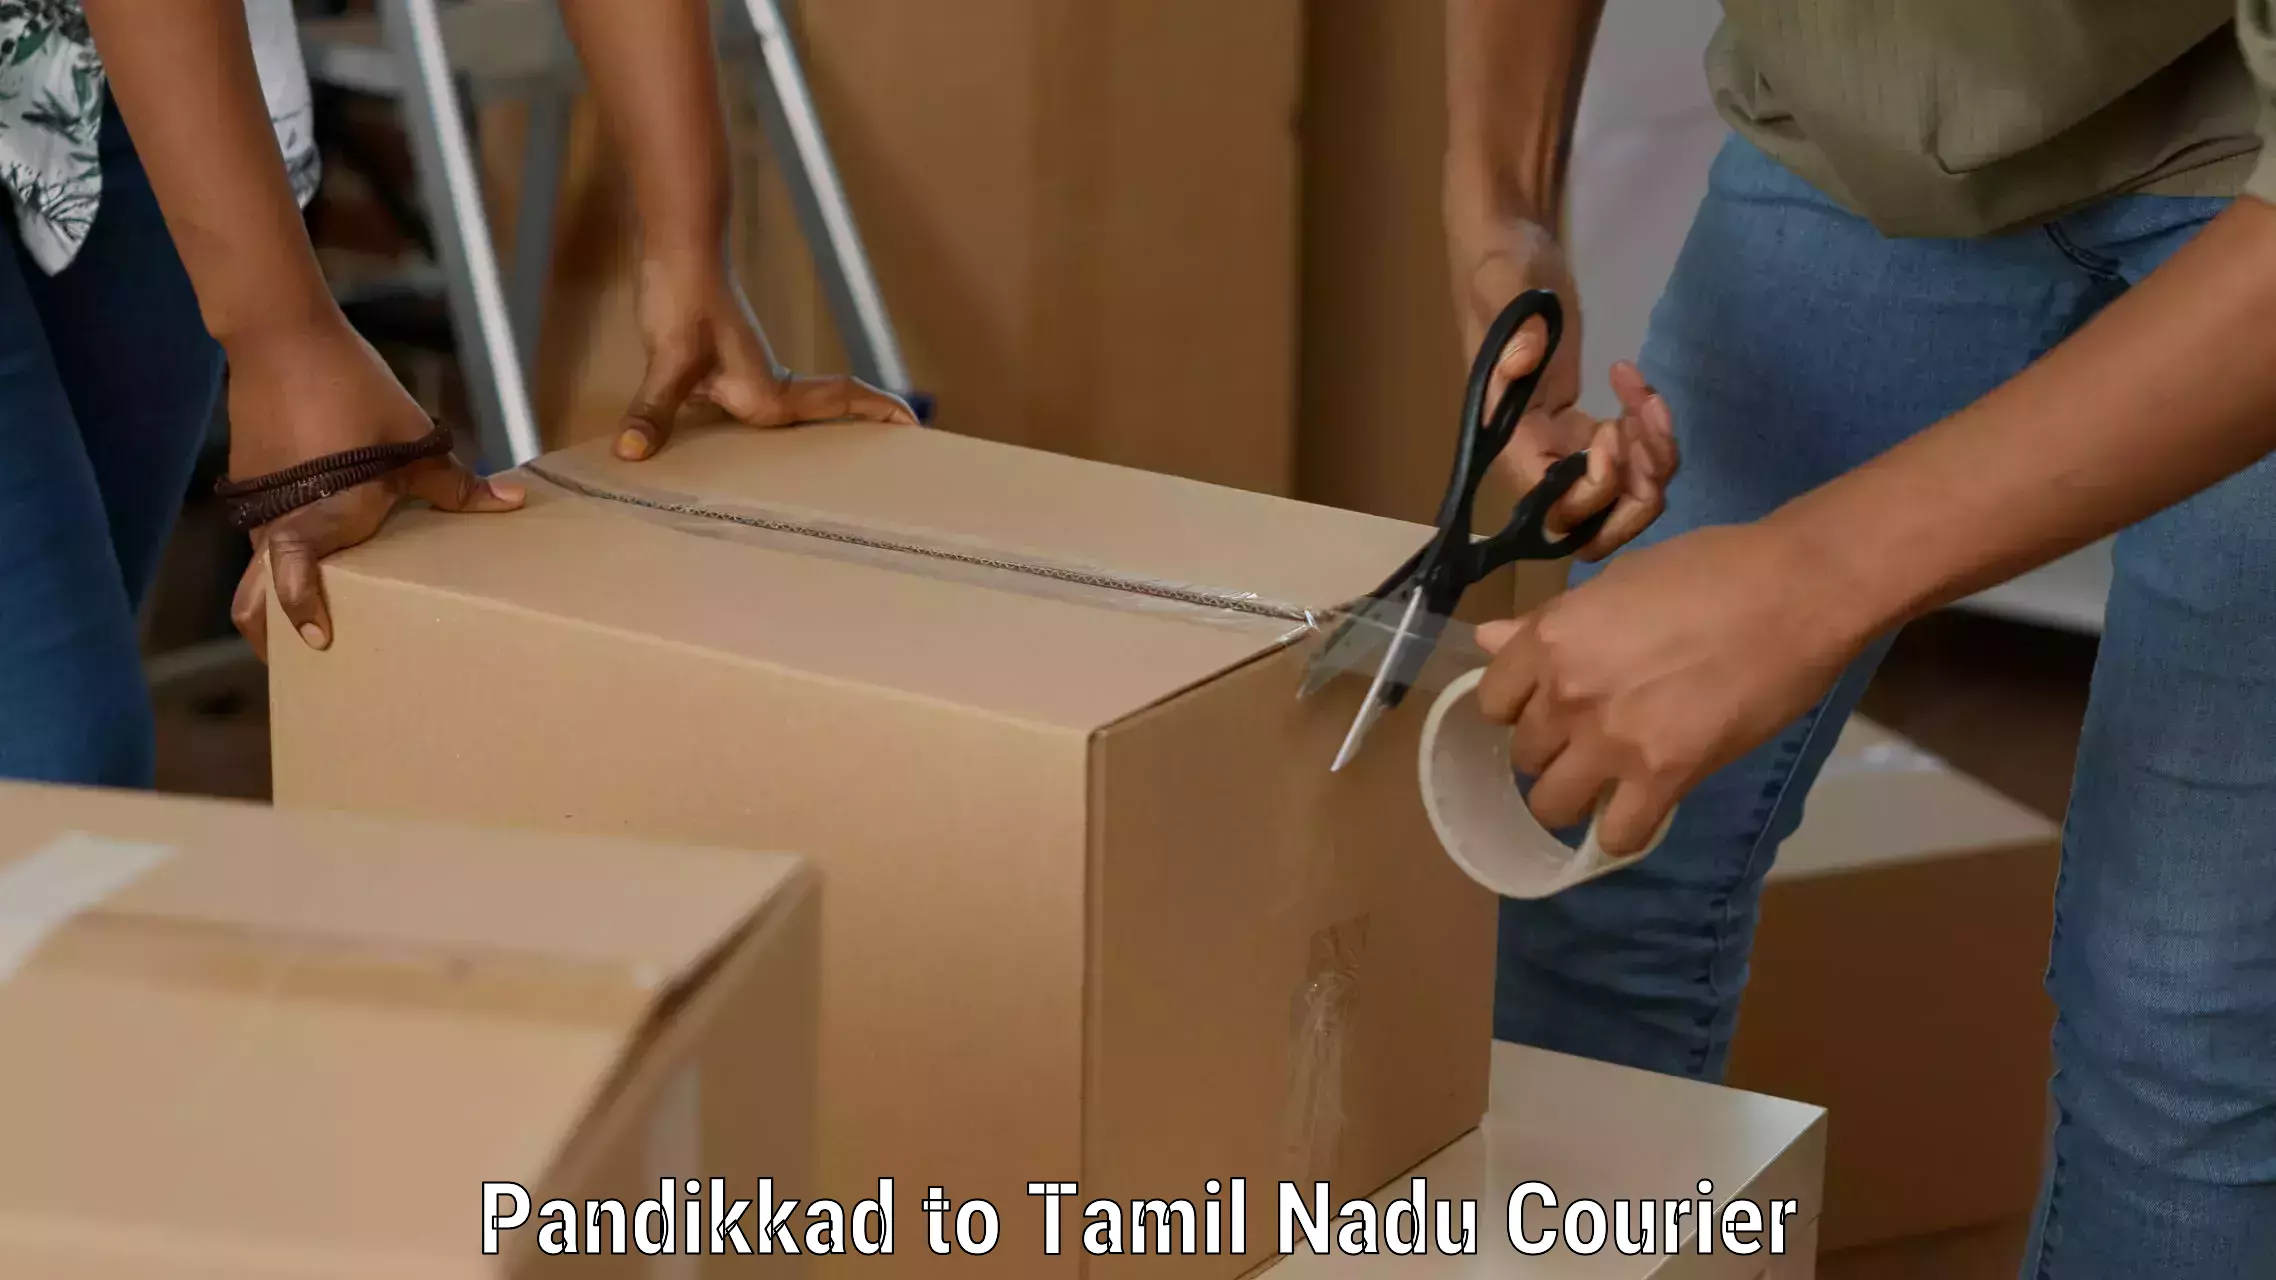 High-efficiency logistics Pandikkad to Tiruturaipundi